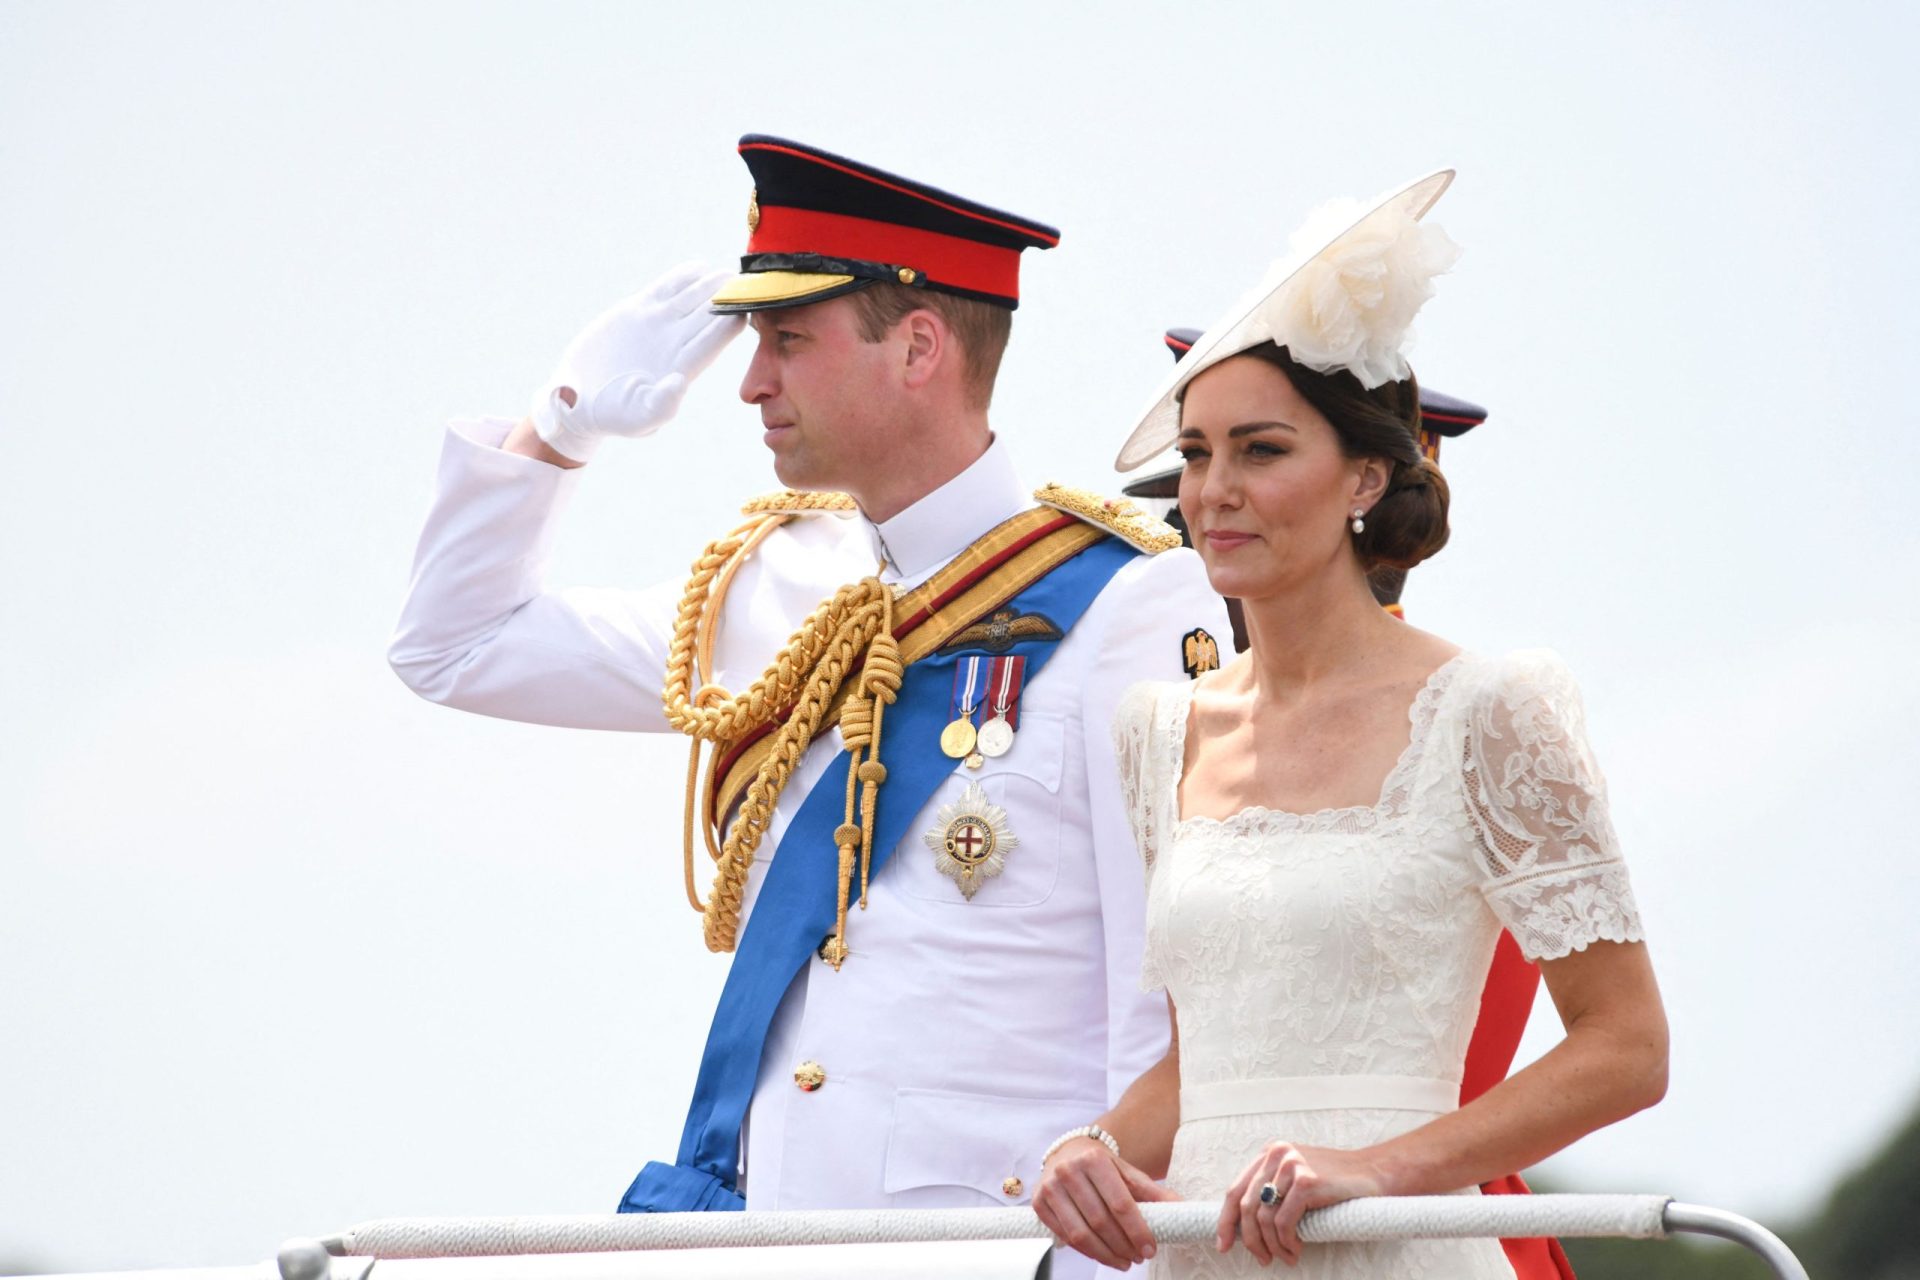 “A escravatura mancha a história do Reino Unido”, diz príncipe William